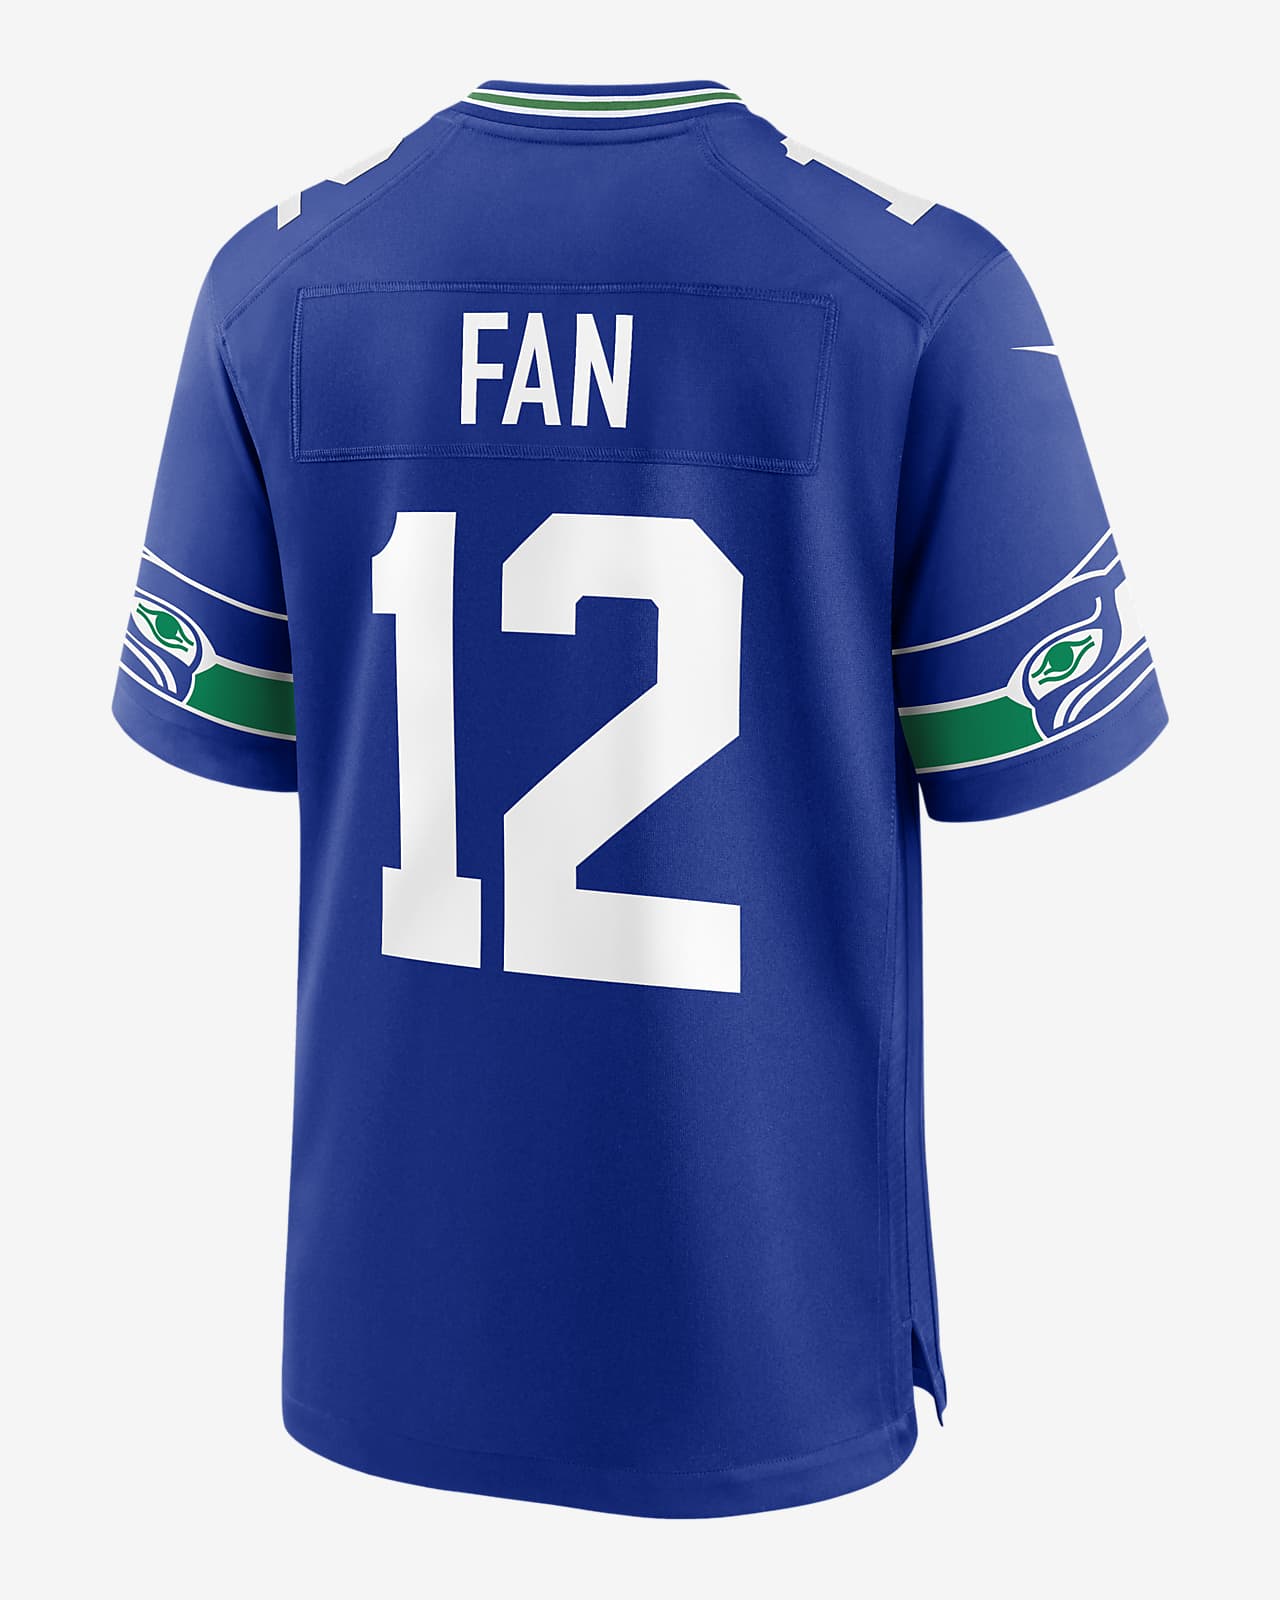 Sports Fan Jersey T-shirt Baseball uniform Sleeve, Seattle